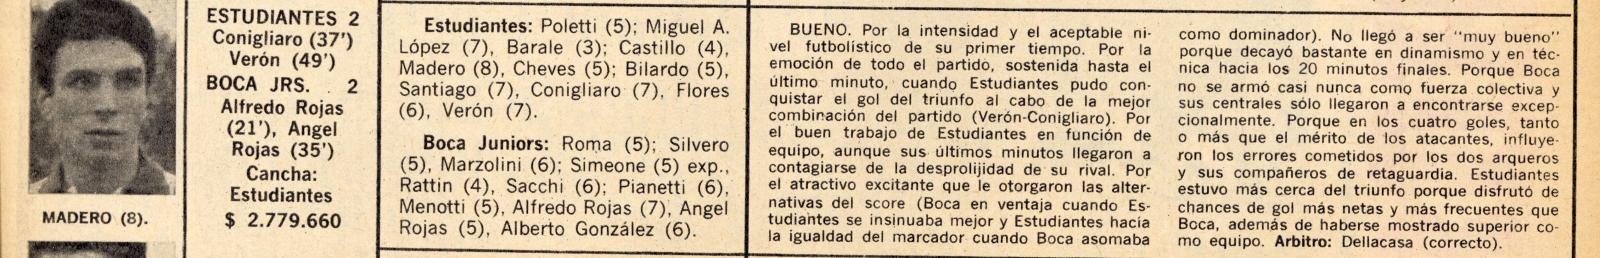 Imagen Bilardo vs Menotti, la única vez que se enfrentaron como futbolistas. Fue el 2 de mayo de 1965 en el empate 2-2 entre Estudiantes y Boca en La Plata